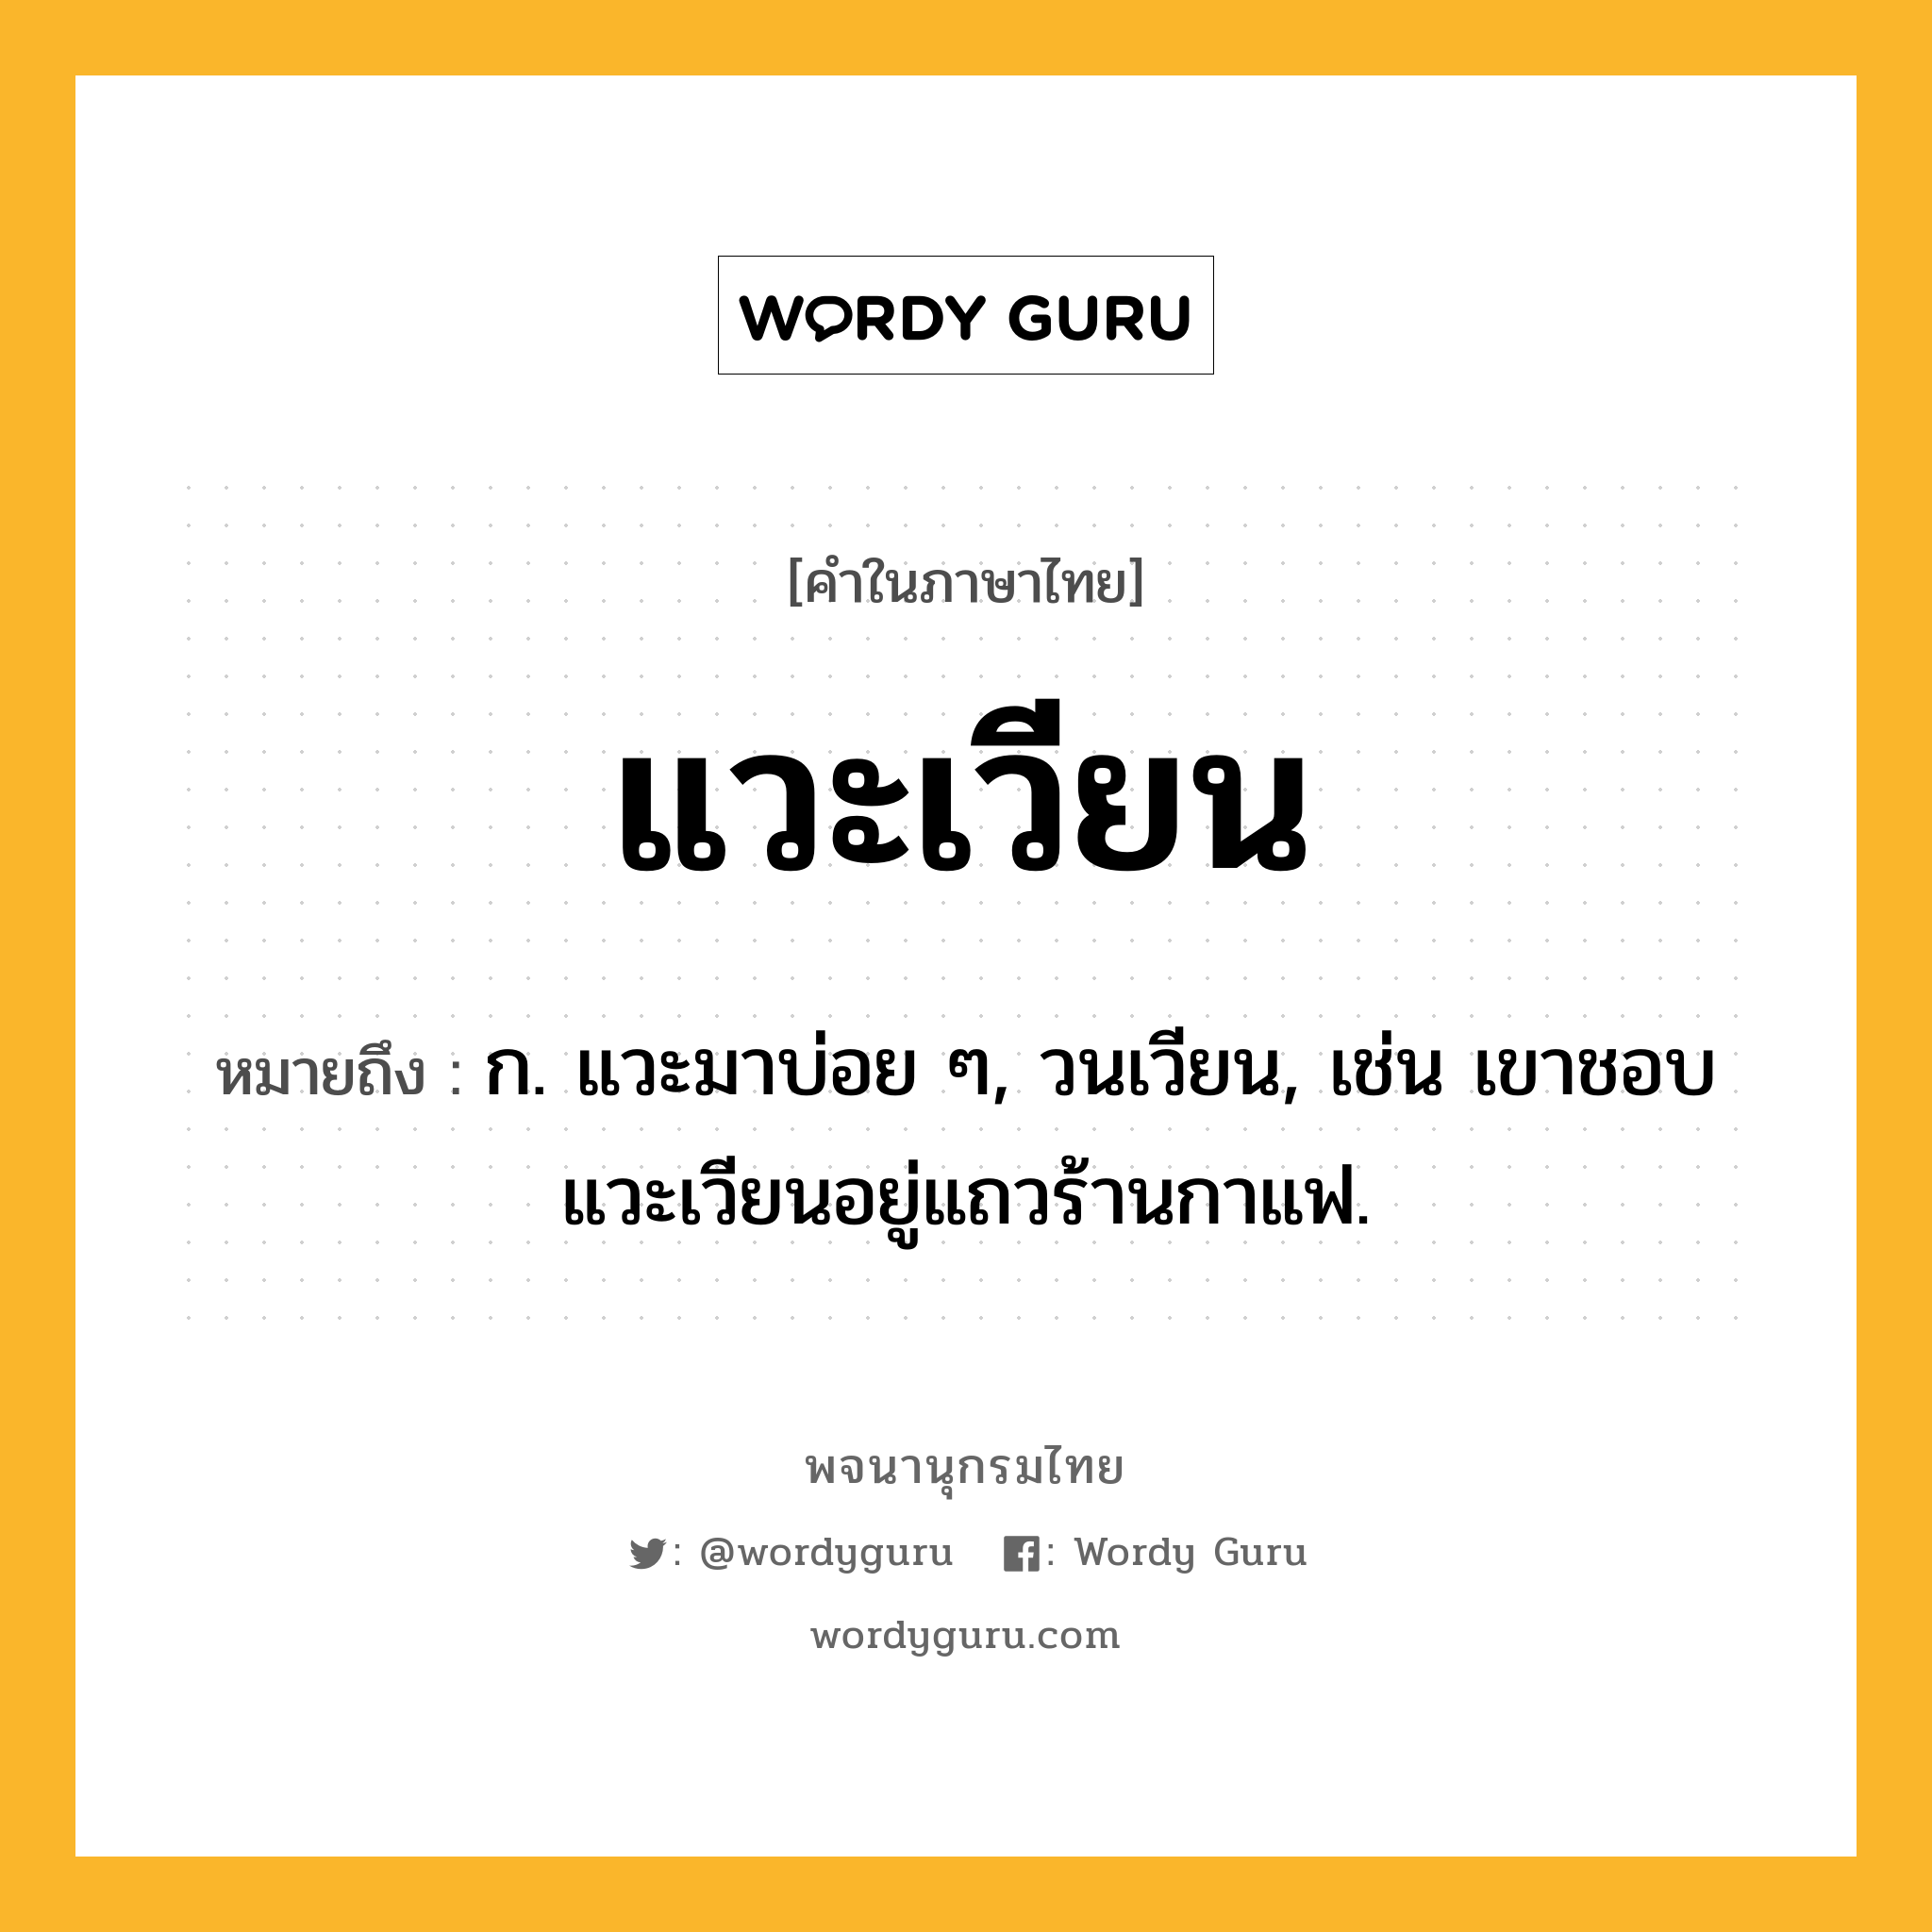 แวะเวียน ความหมาย หมายถึงอะไร?, คำในภาษาไทย แวะเวียน หมายถึง ก. แวะมาบ่อย ๆ, วนเวียน, เช่น เขาชอบแวะเวียนอยู่แถวร้านกาแฟ.